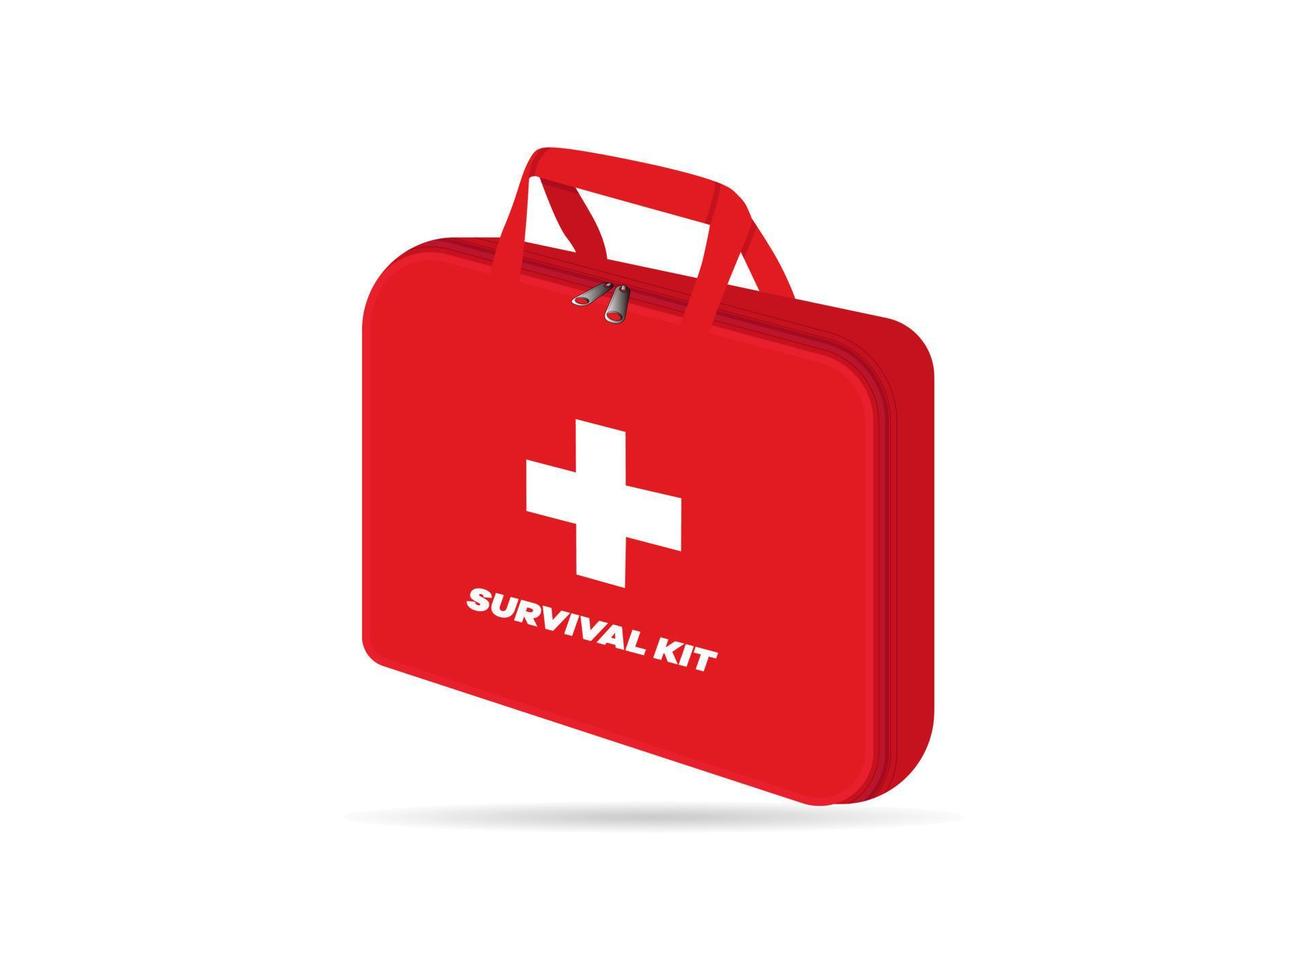 Survival-Kit-Tasche - medizinische Ausrüstung oder Erste-Hilfe-Ausrüstung isoliert auf weißem Hintergrund vektor